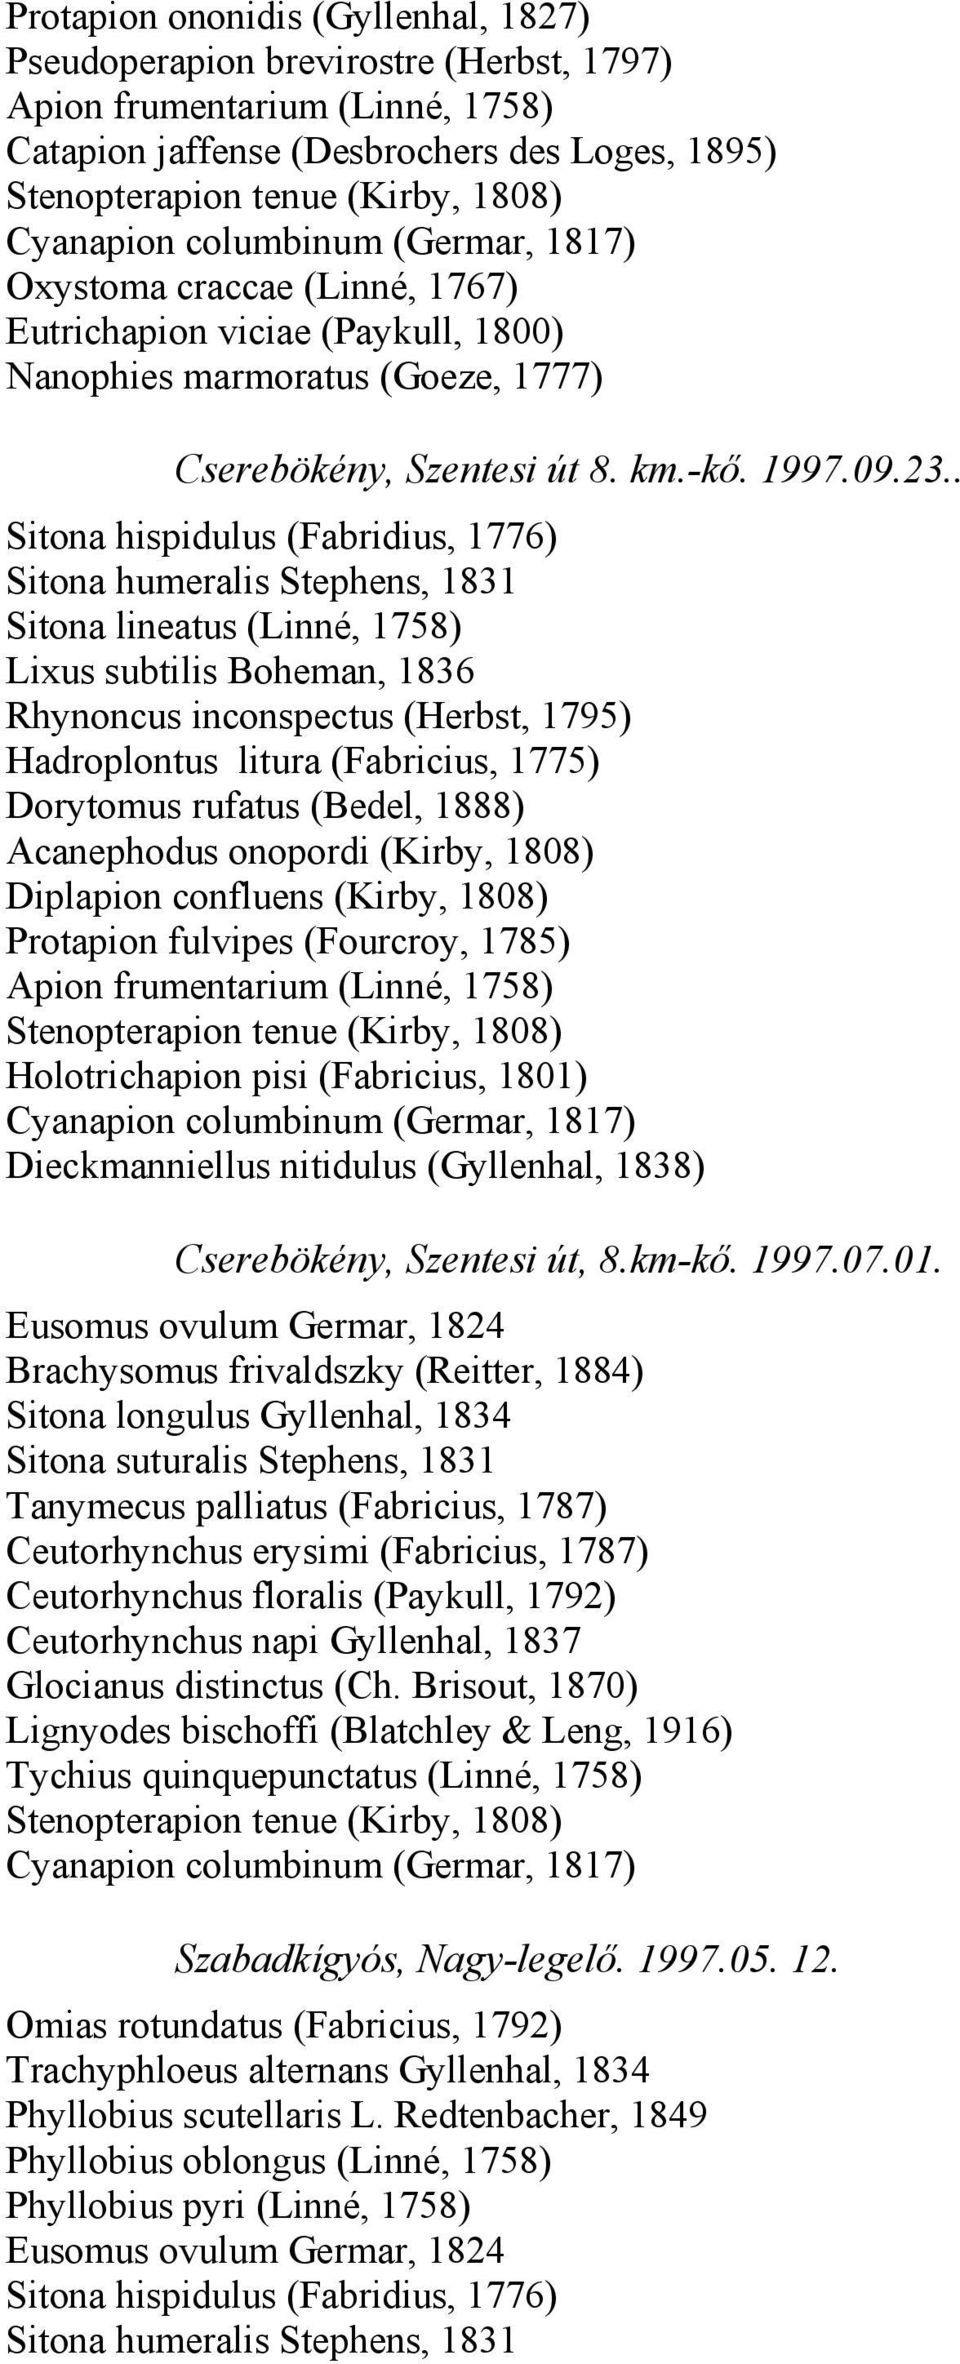 . Sitona hispidulus (Fabridius, 1776) Lixus subtilis Boheman, 1836 Rhynoncus inconspectus (Herbst, 1795) Hadroplontus litura (Fabricius, 1775) Dorytomus rufatus (Bedel, 1888) Diplapion confluens